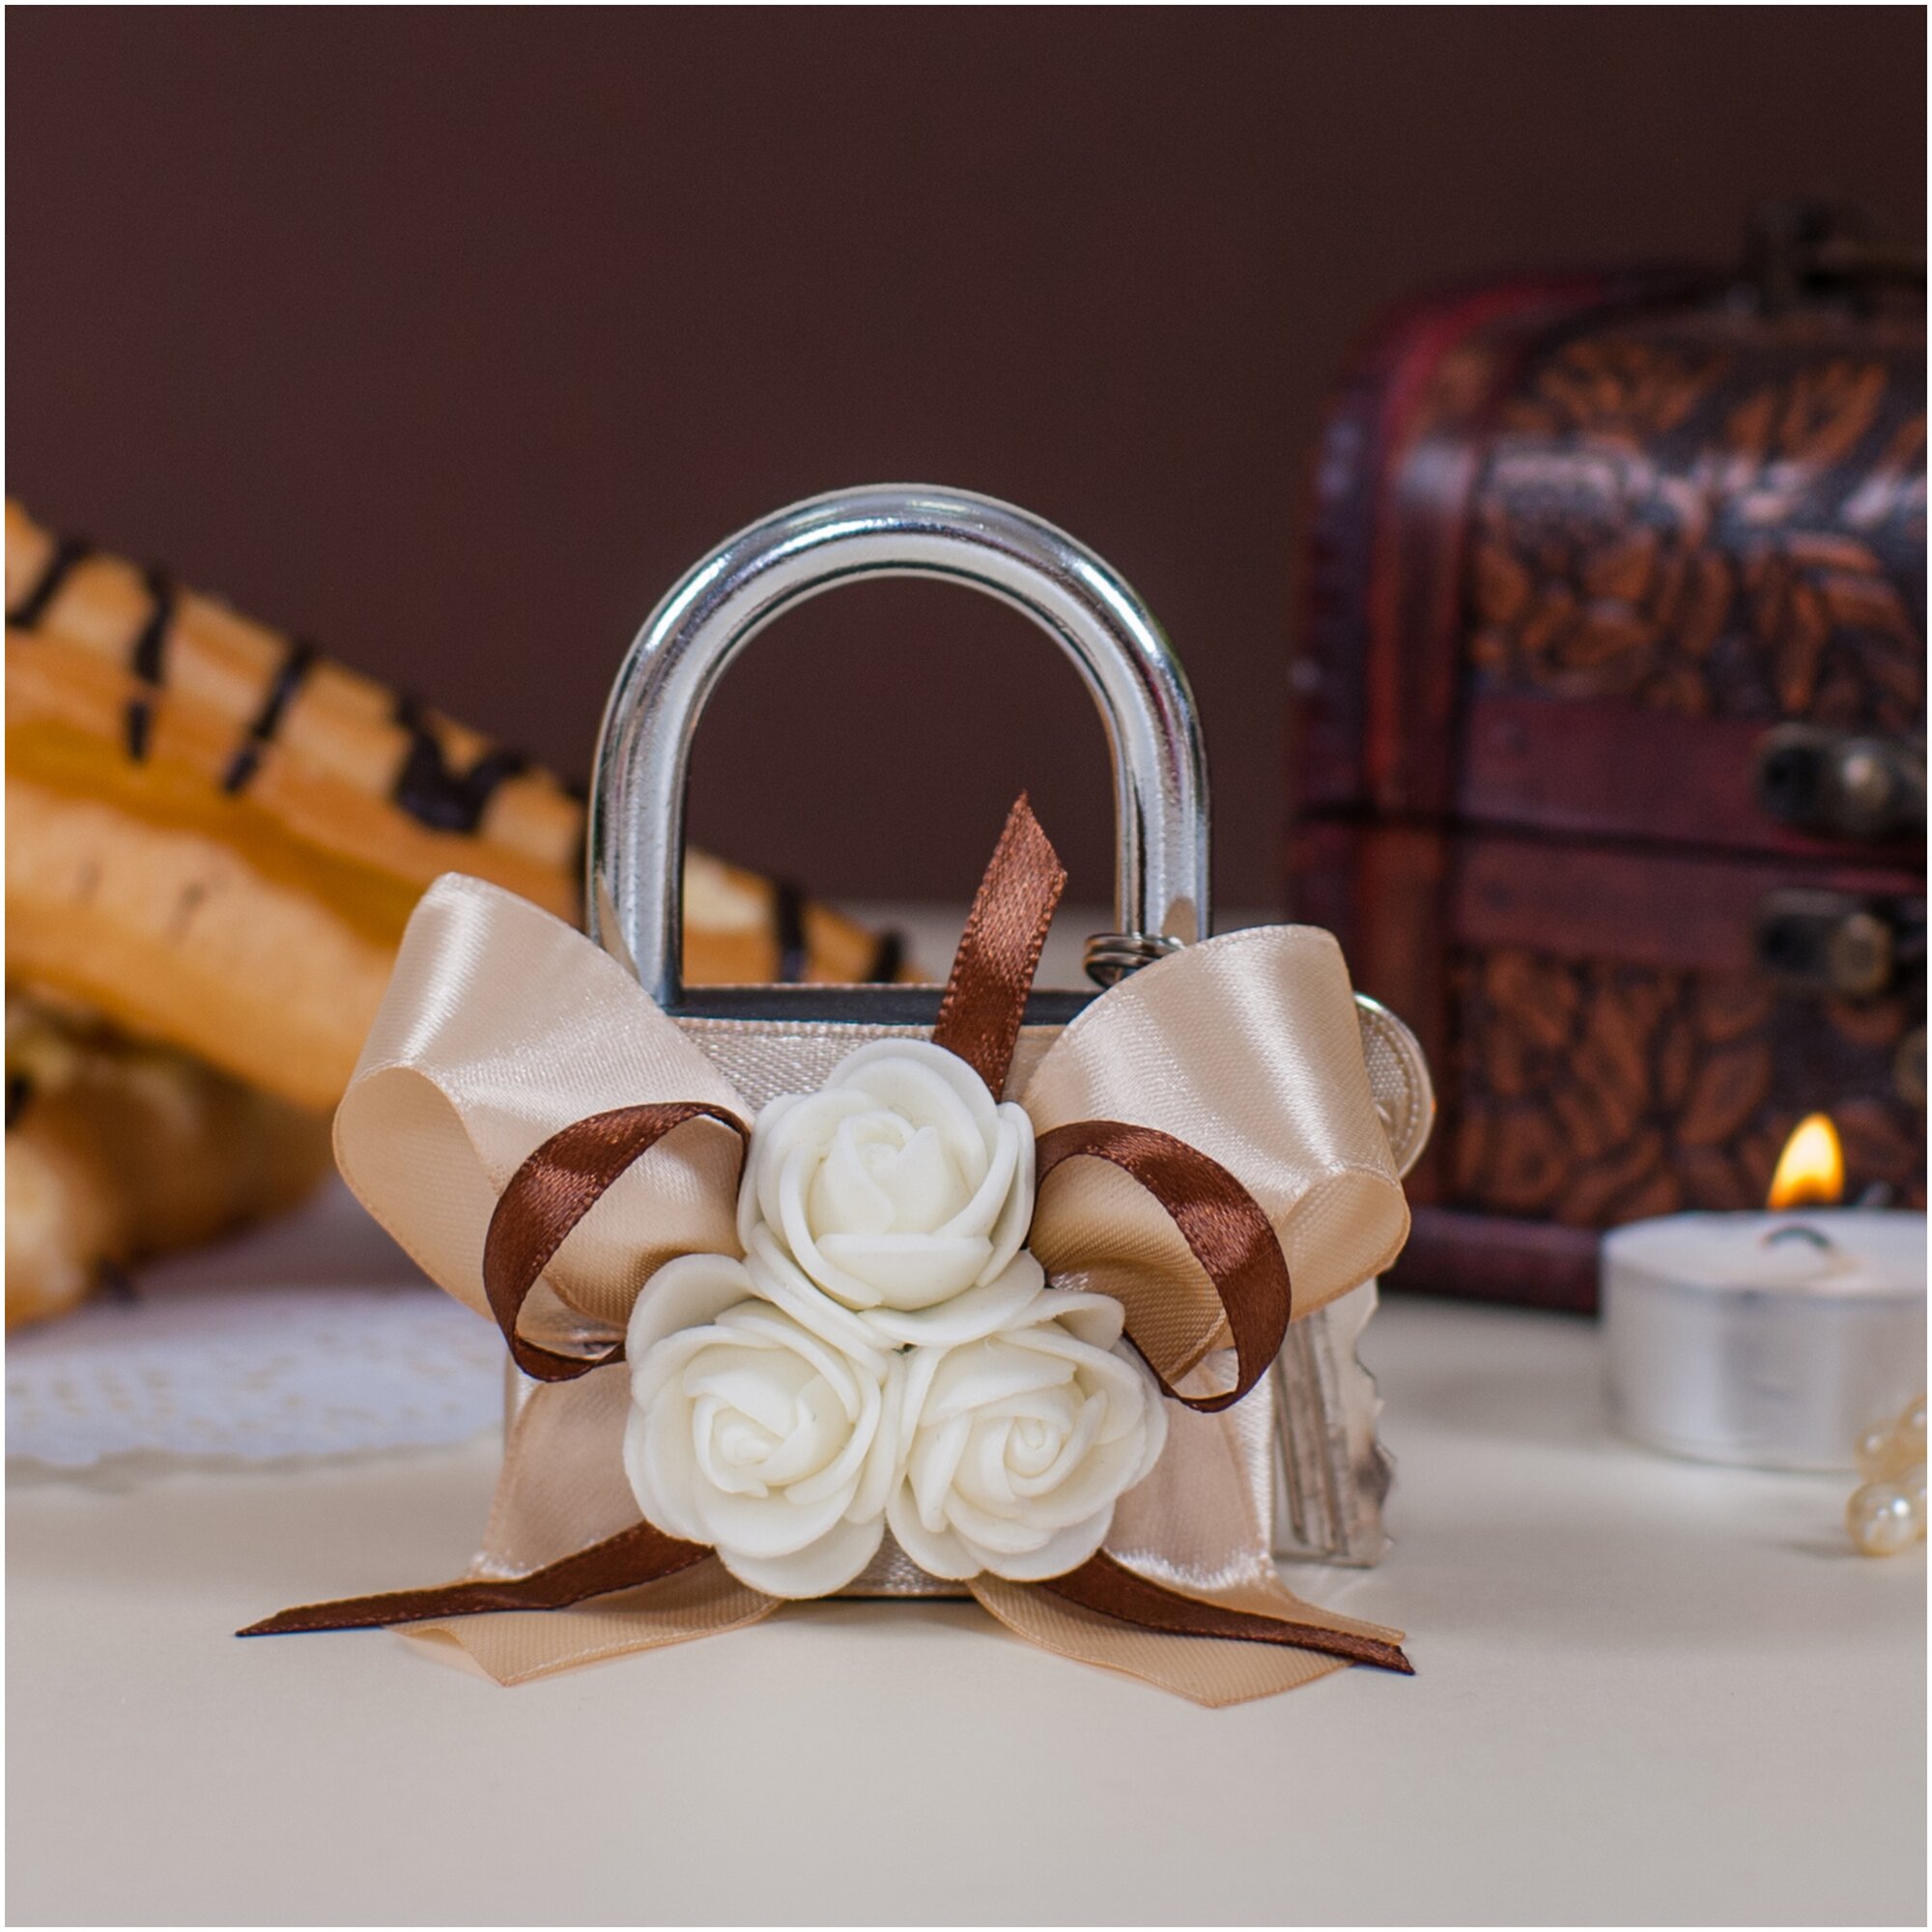 Свадебный замочек любви и верности "Карамель" с бантом из кремовых и коричневых атласных лент и латексными розами молочного цвета